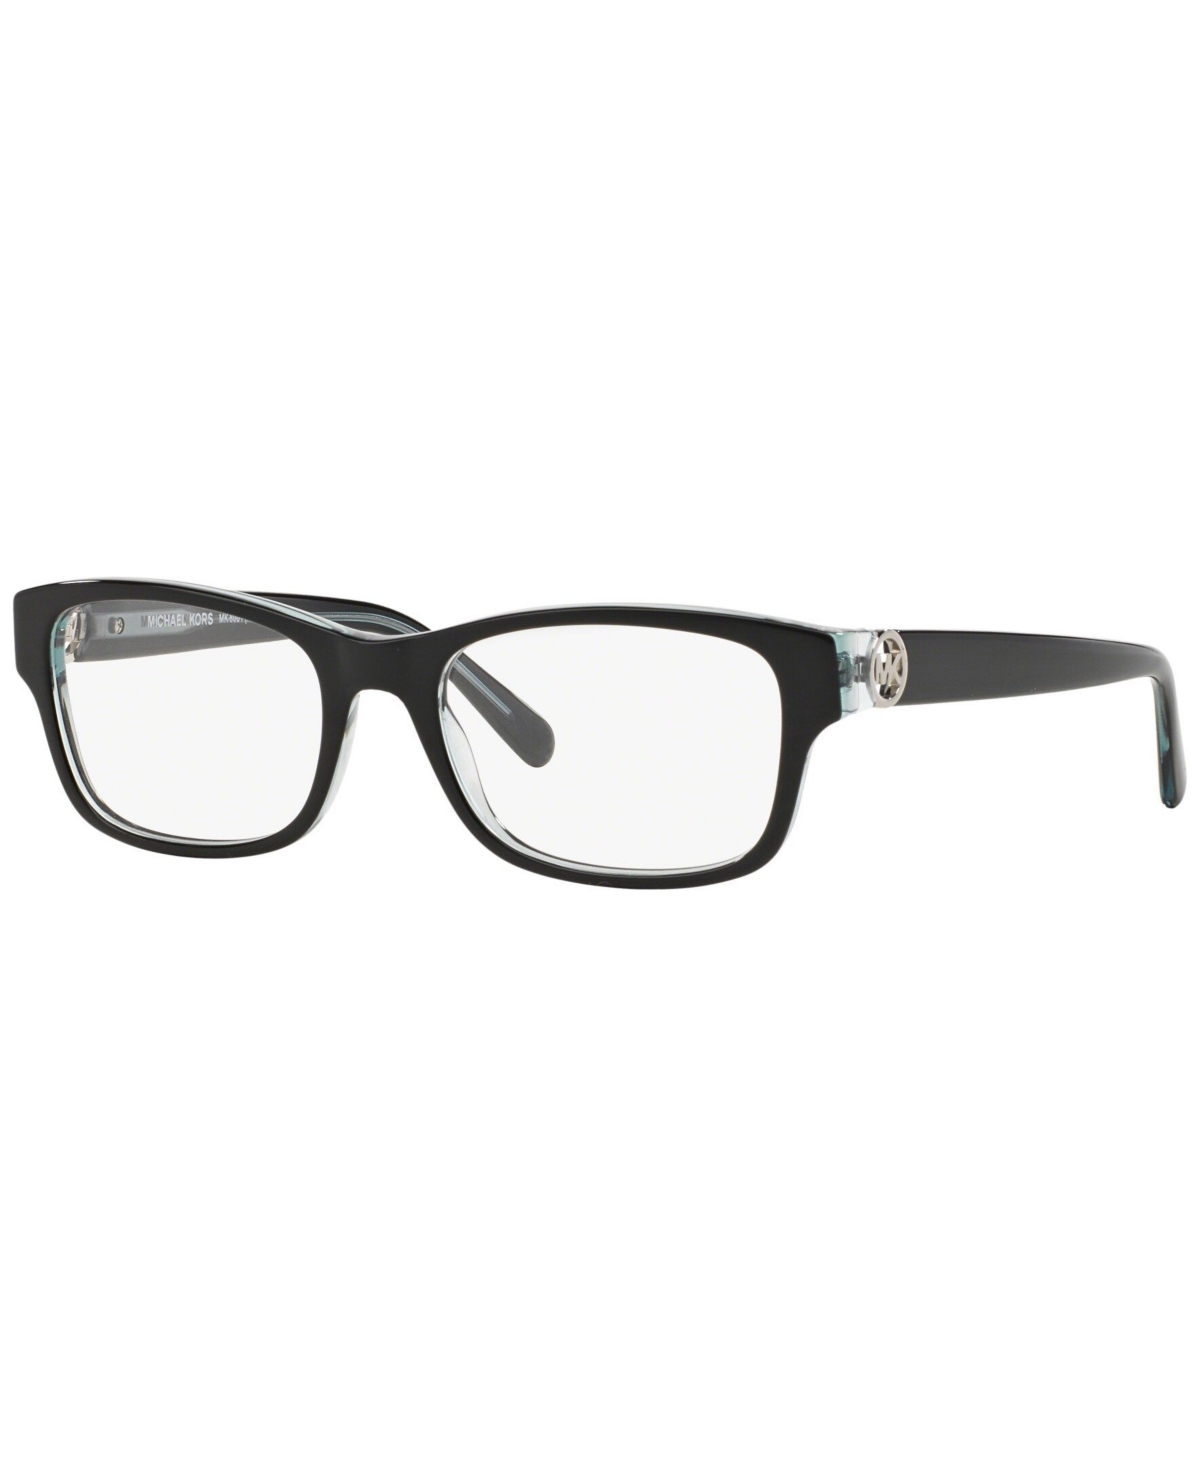 MK8001 Women's Square Eyeglasses - Black Blue